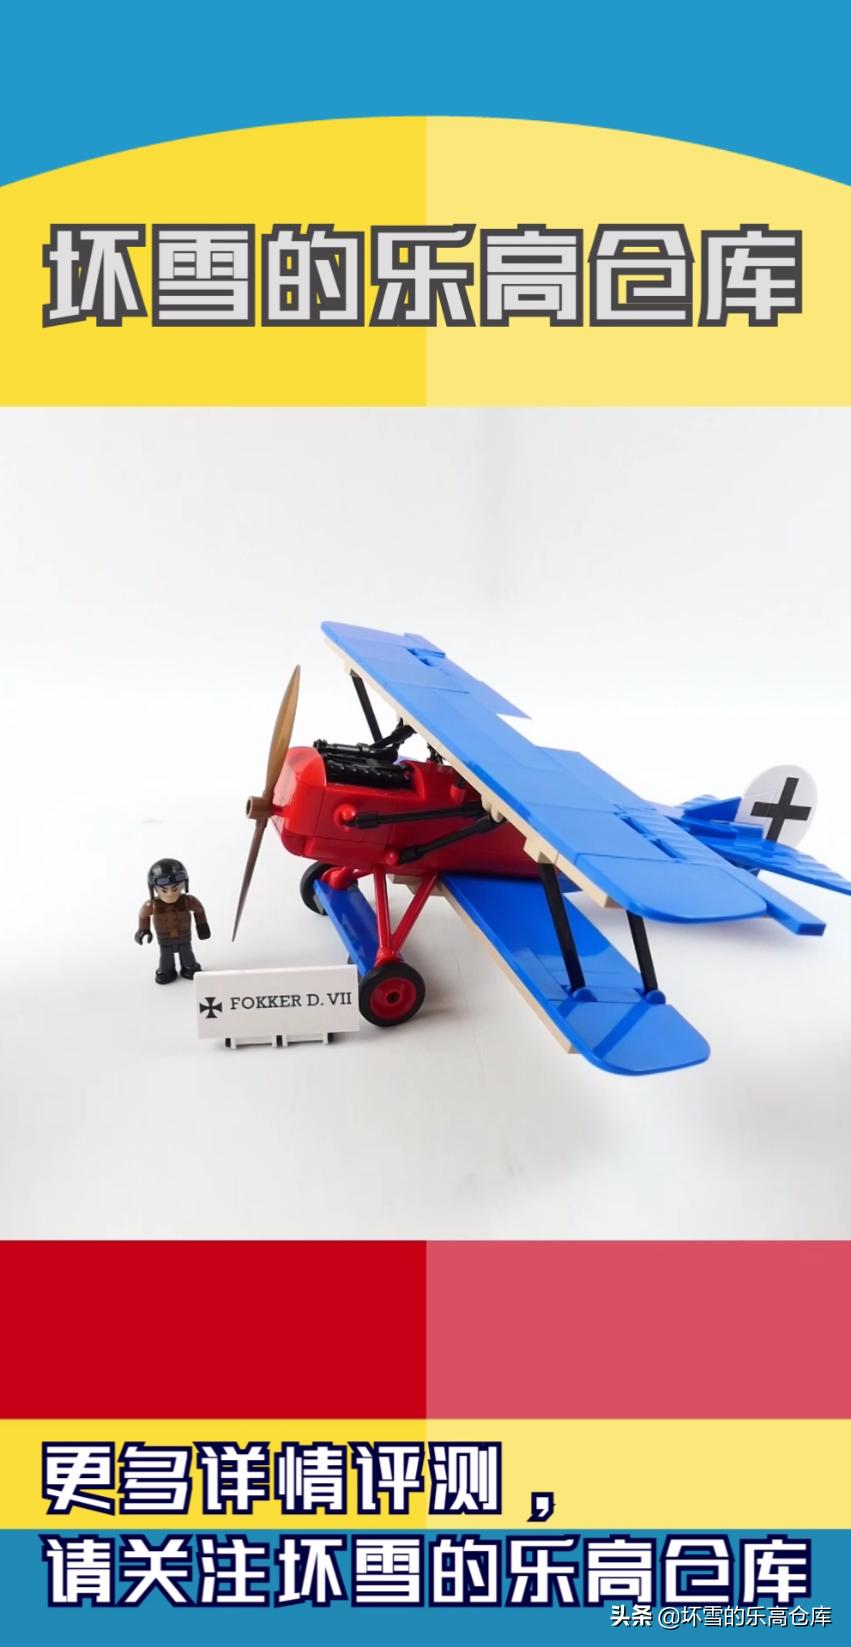 用积木搭建一战时的飞机:福特d7战斗机#积木# #乐高